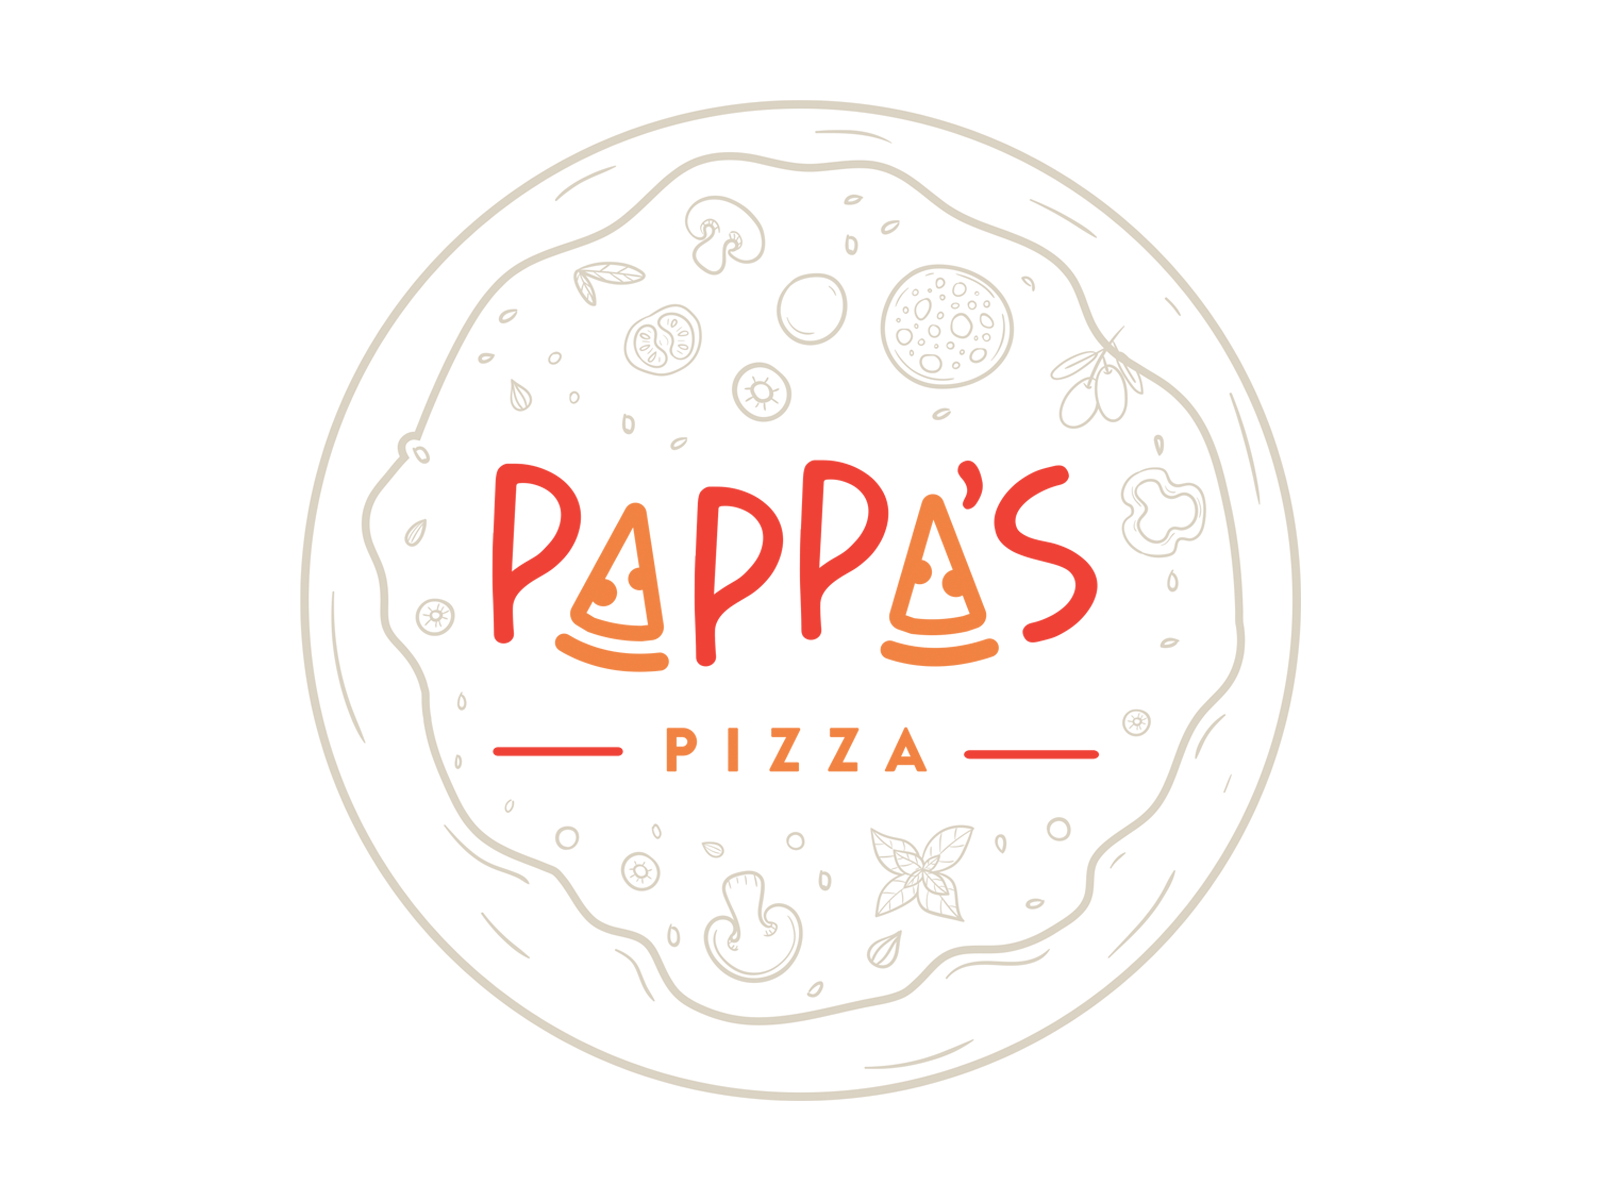 Pappas pizza 2